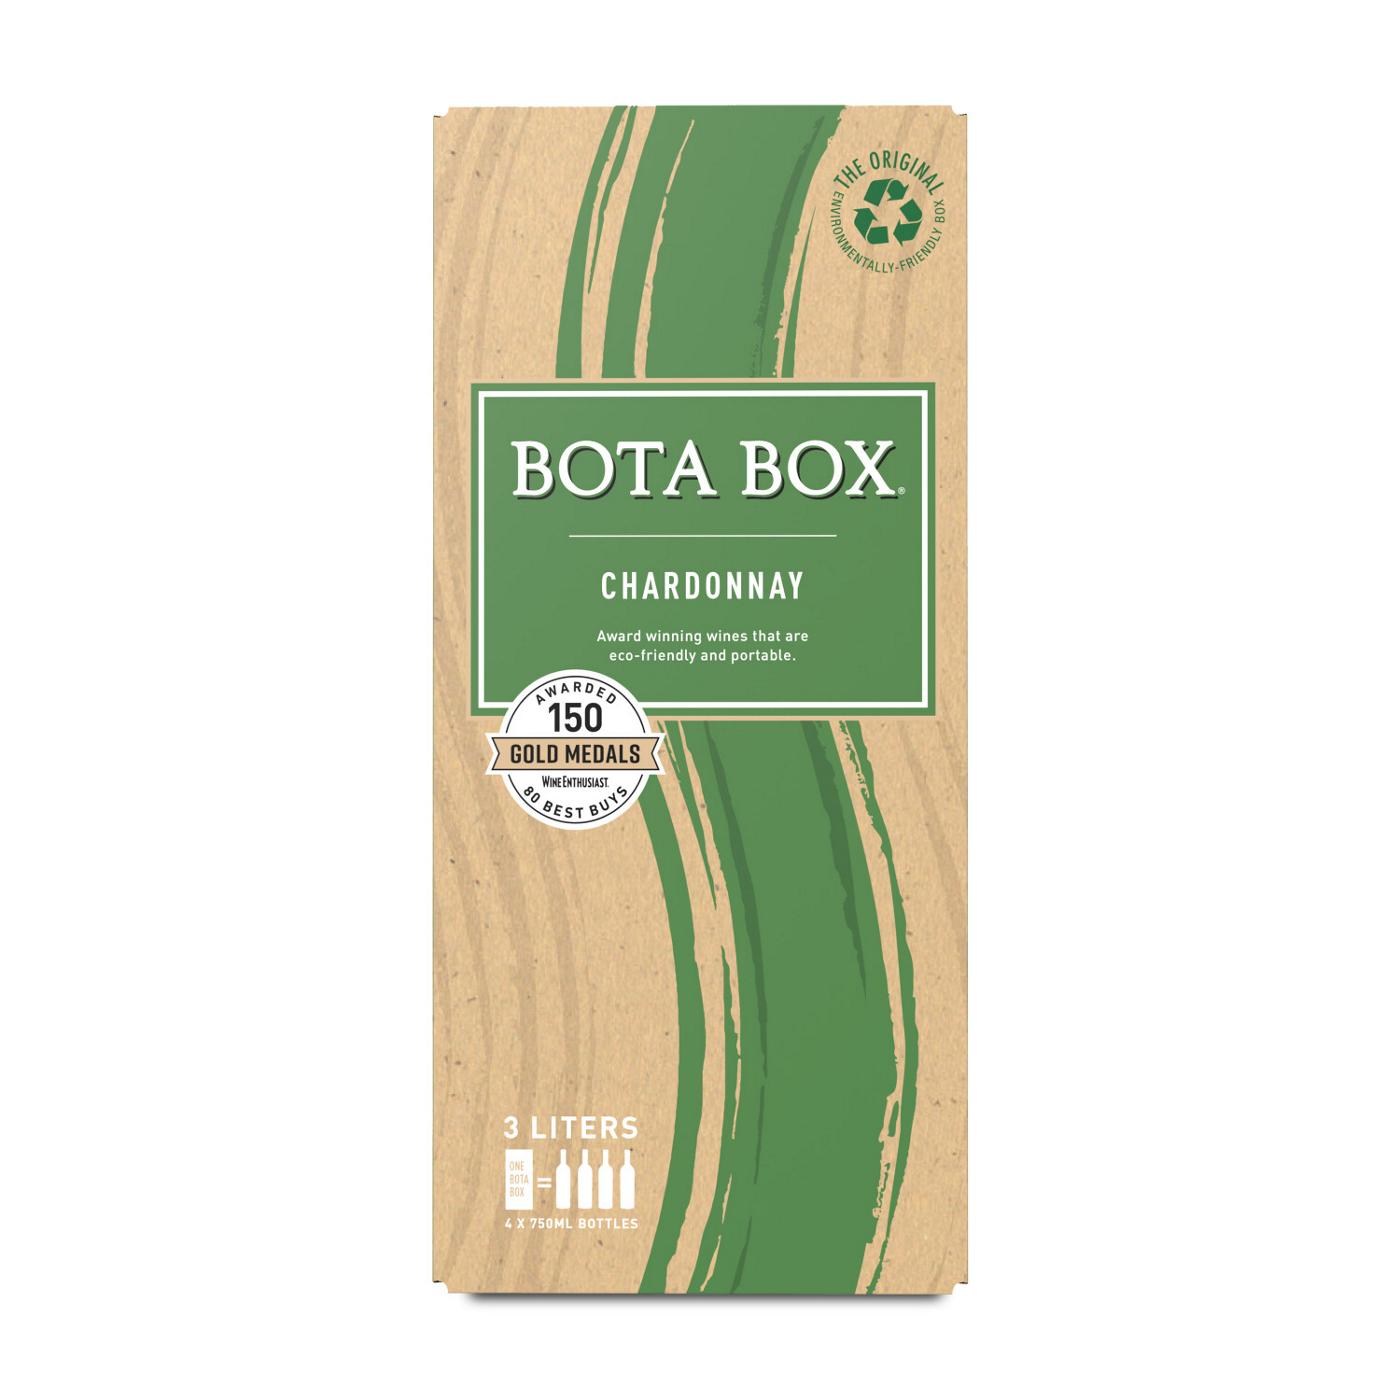 Bota Box Chardonnay Boxed Wine; image 1 of 4